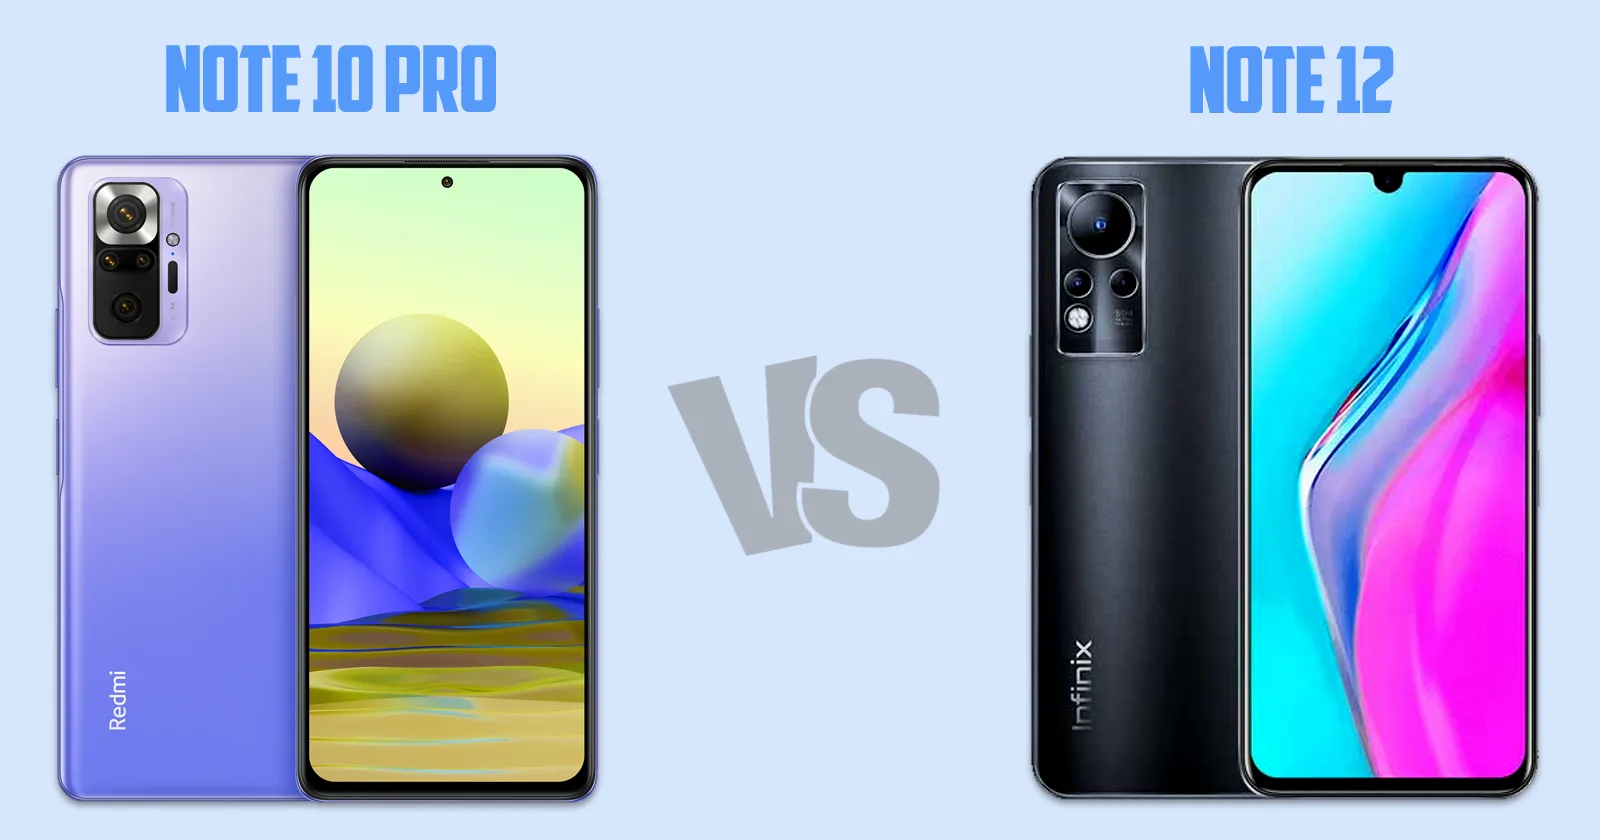 Xiaomi Redmi Note 10 pro vs Xiaomi Redmi Note 12 [ Full Comparison ]